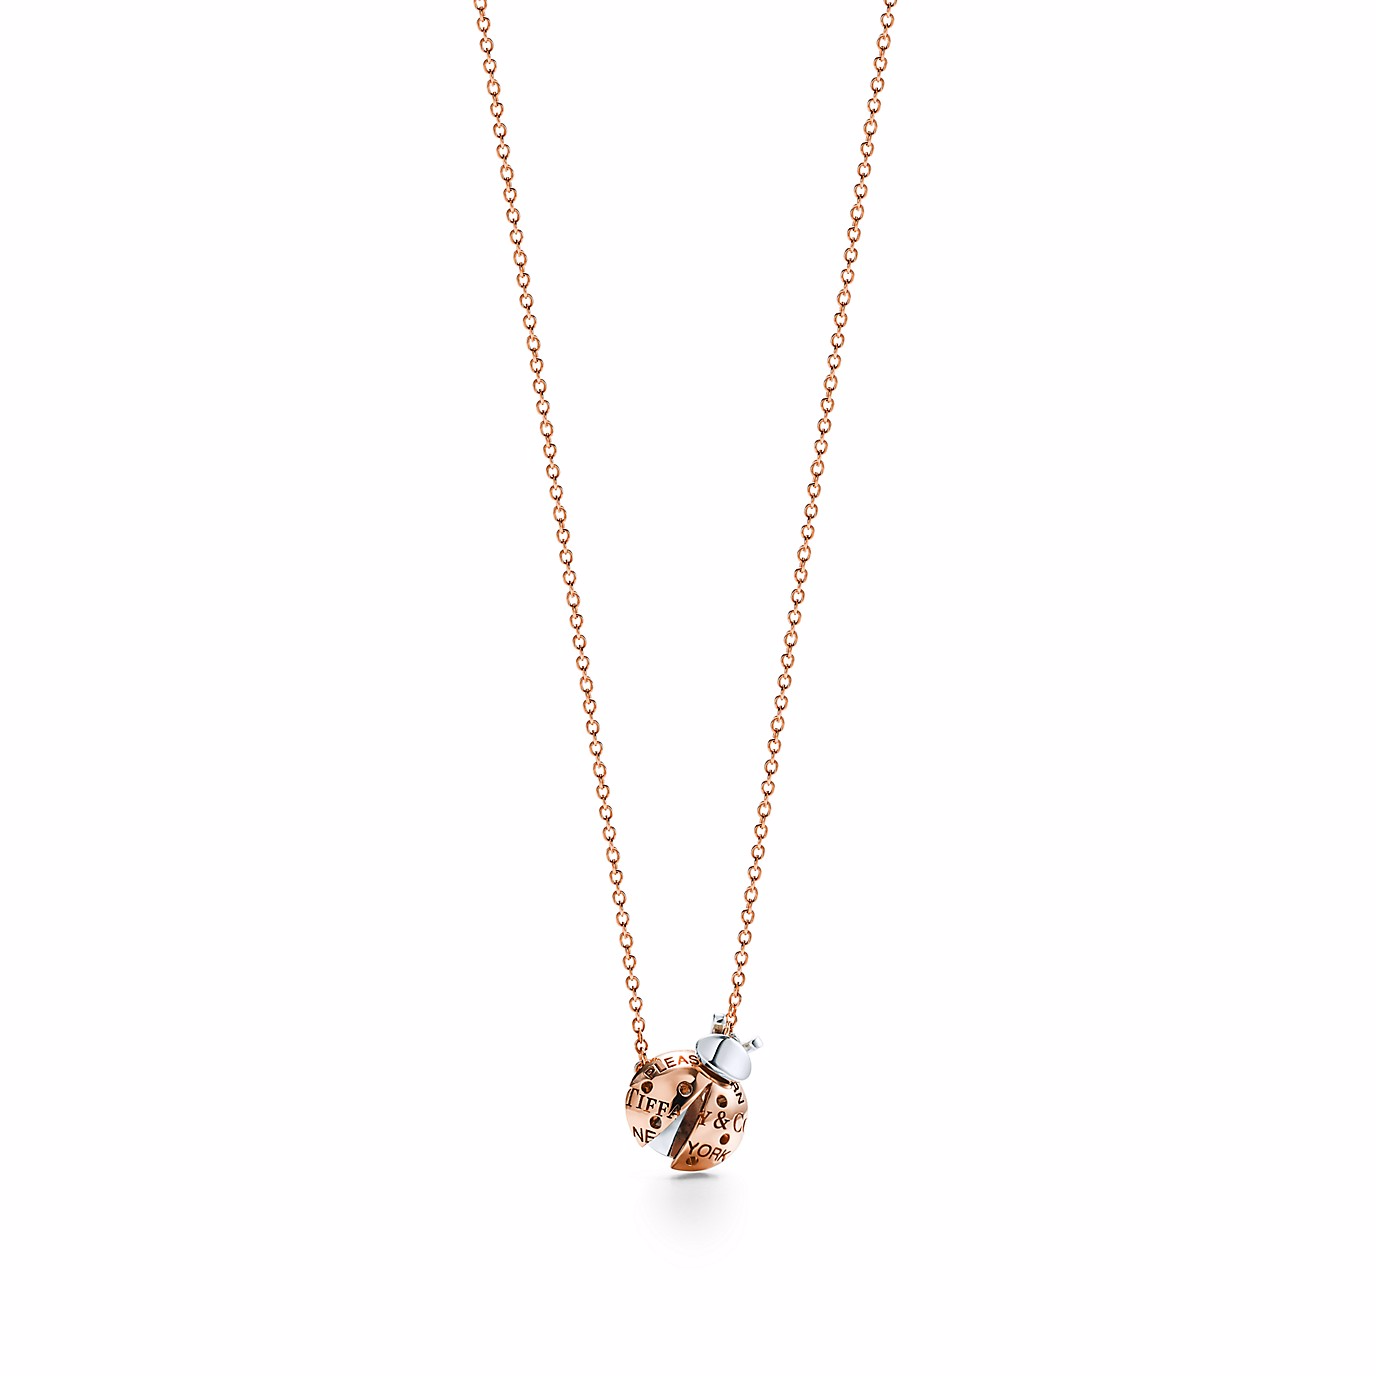 Jóias OEM/ODM Design personalizado pingente de joias em ouro rosa 18k e prata esterlina